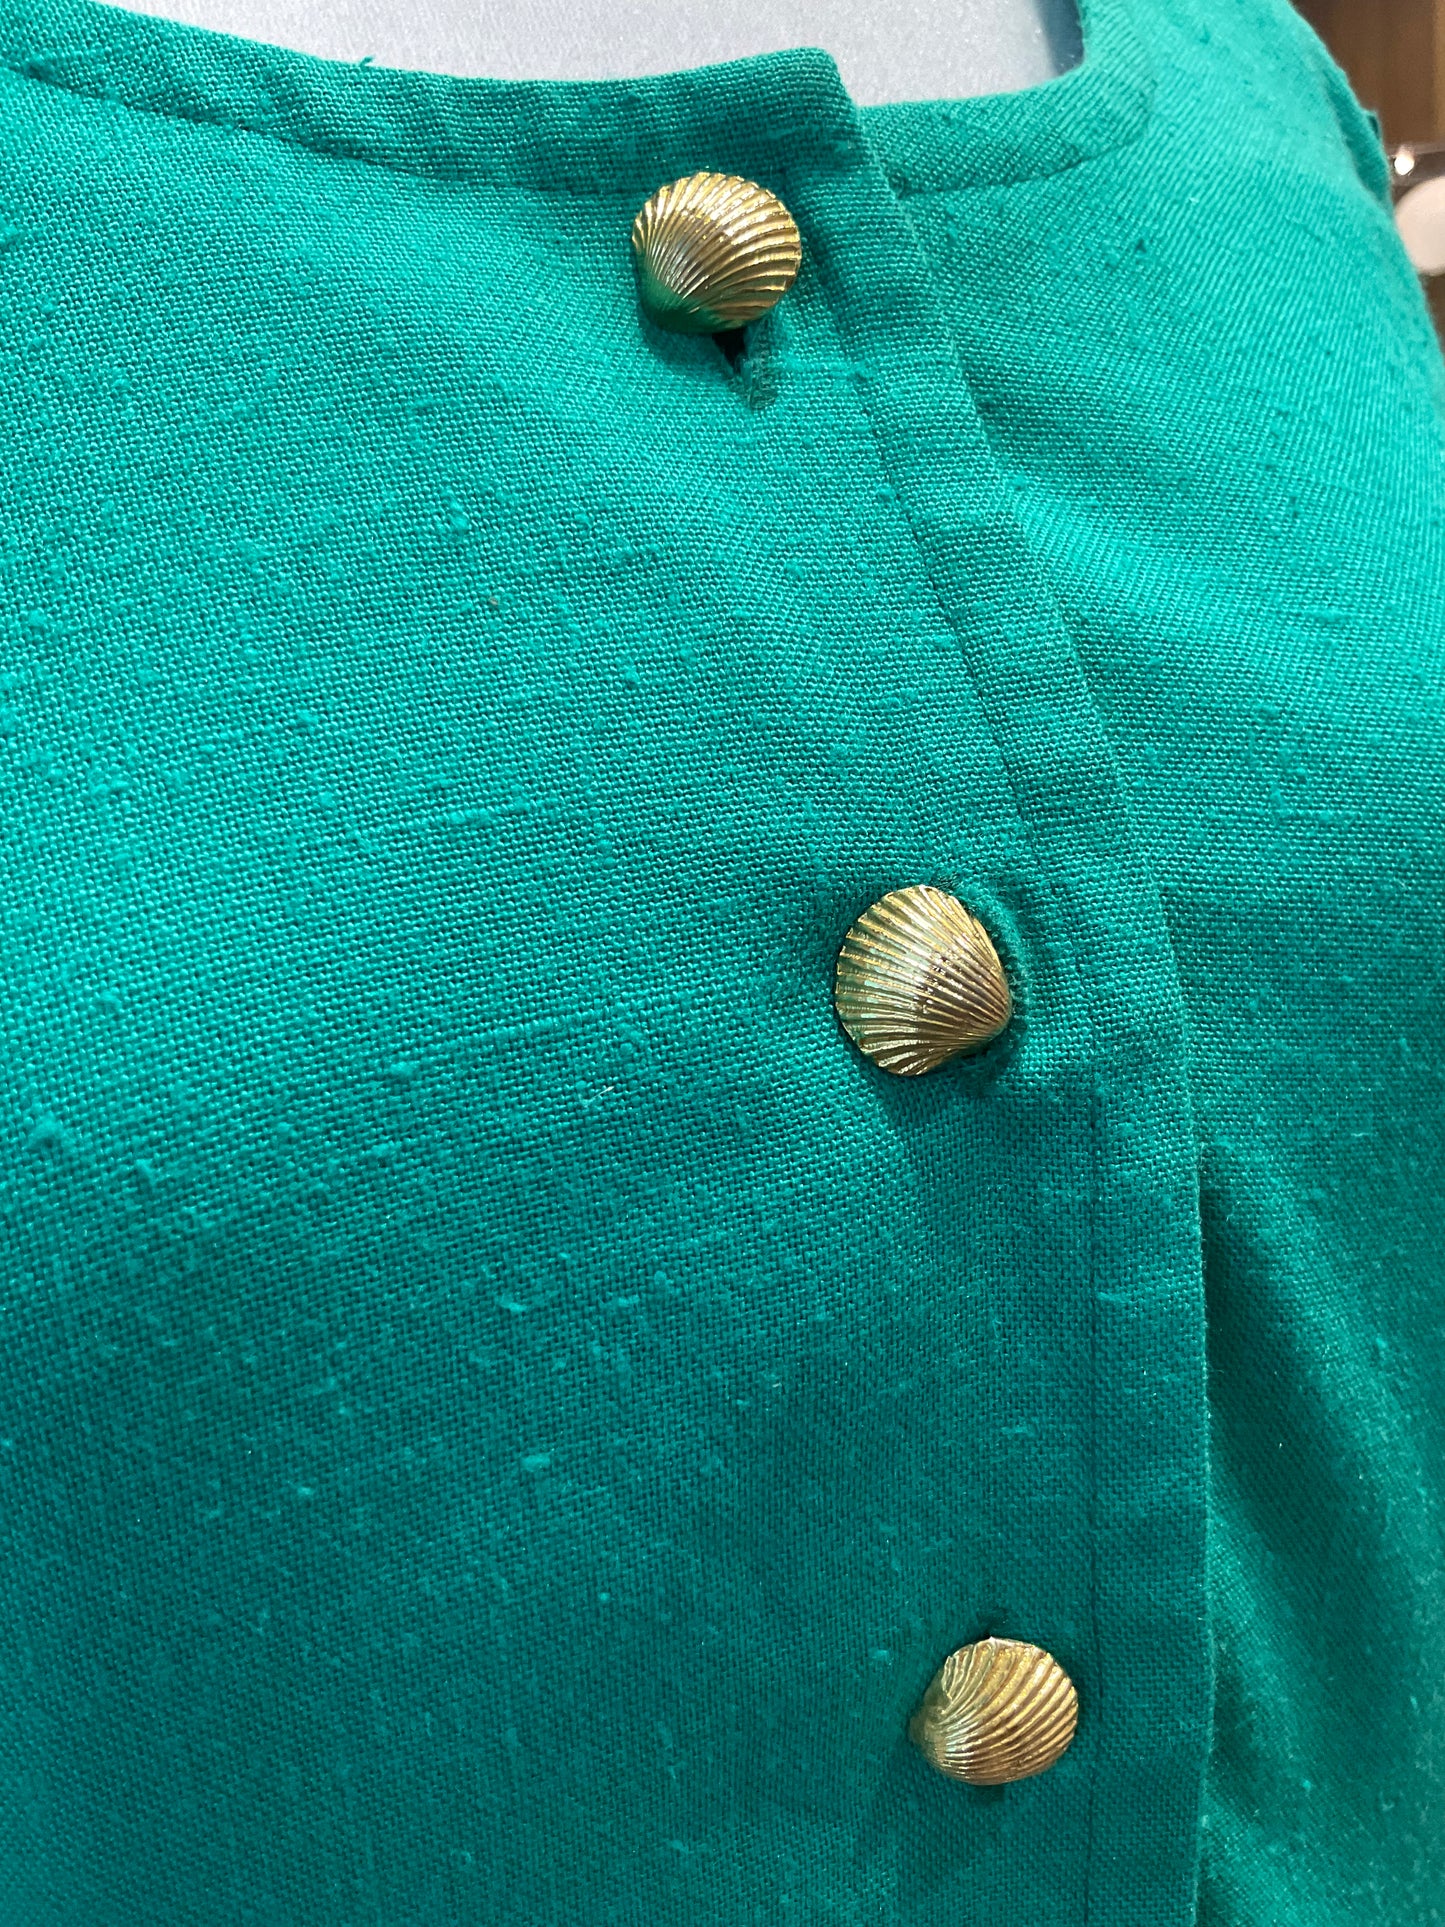 Vintage Dress ~ Turquoise Seashells